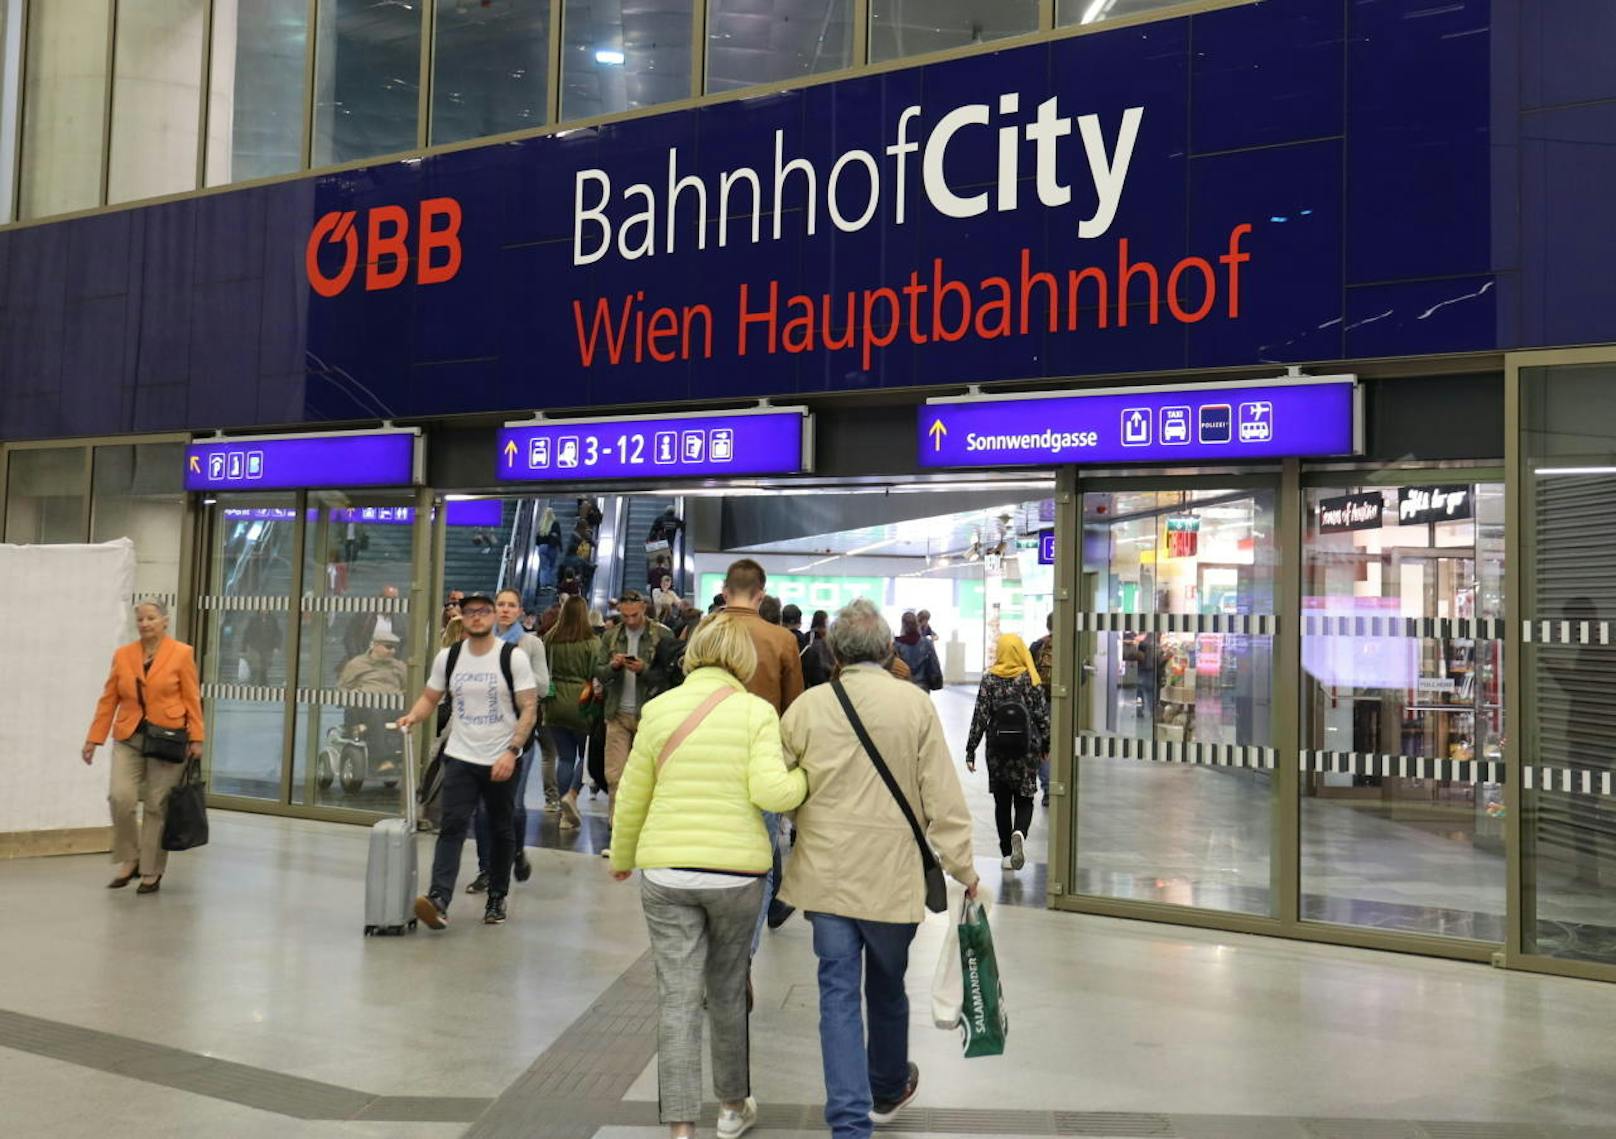 Insgesamt bringt der neue ÖBB-Fahrplan vier Millionen zusätzliche Zugkilometer. Zudem können mit den heimischen Bundesbahnen 14 europäische Länder bereist werden.